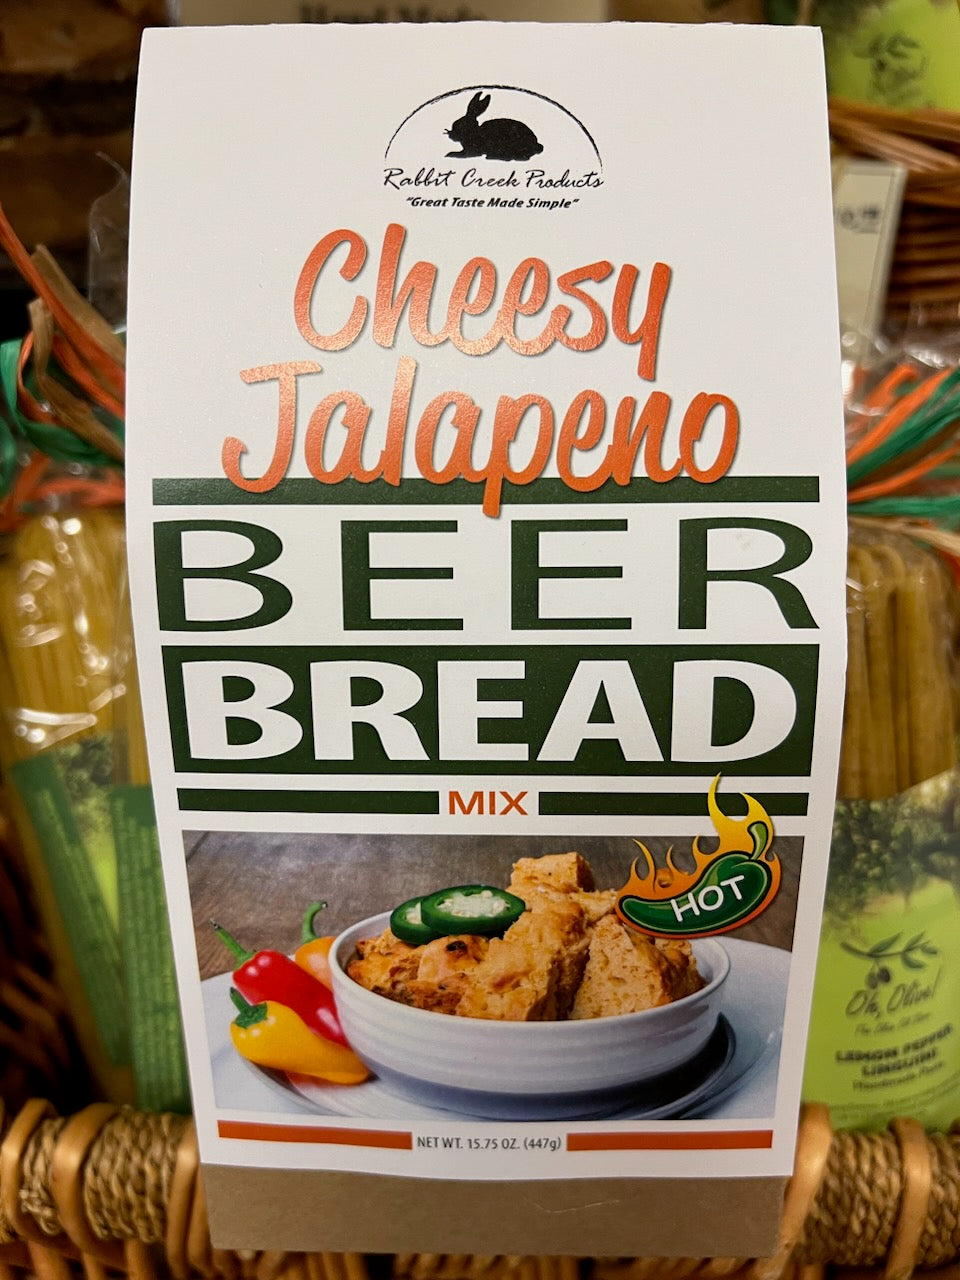 Cheesy Jalapeno Beer Bread